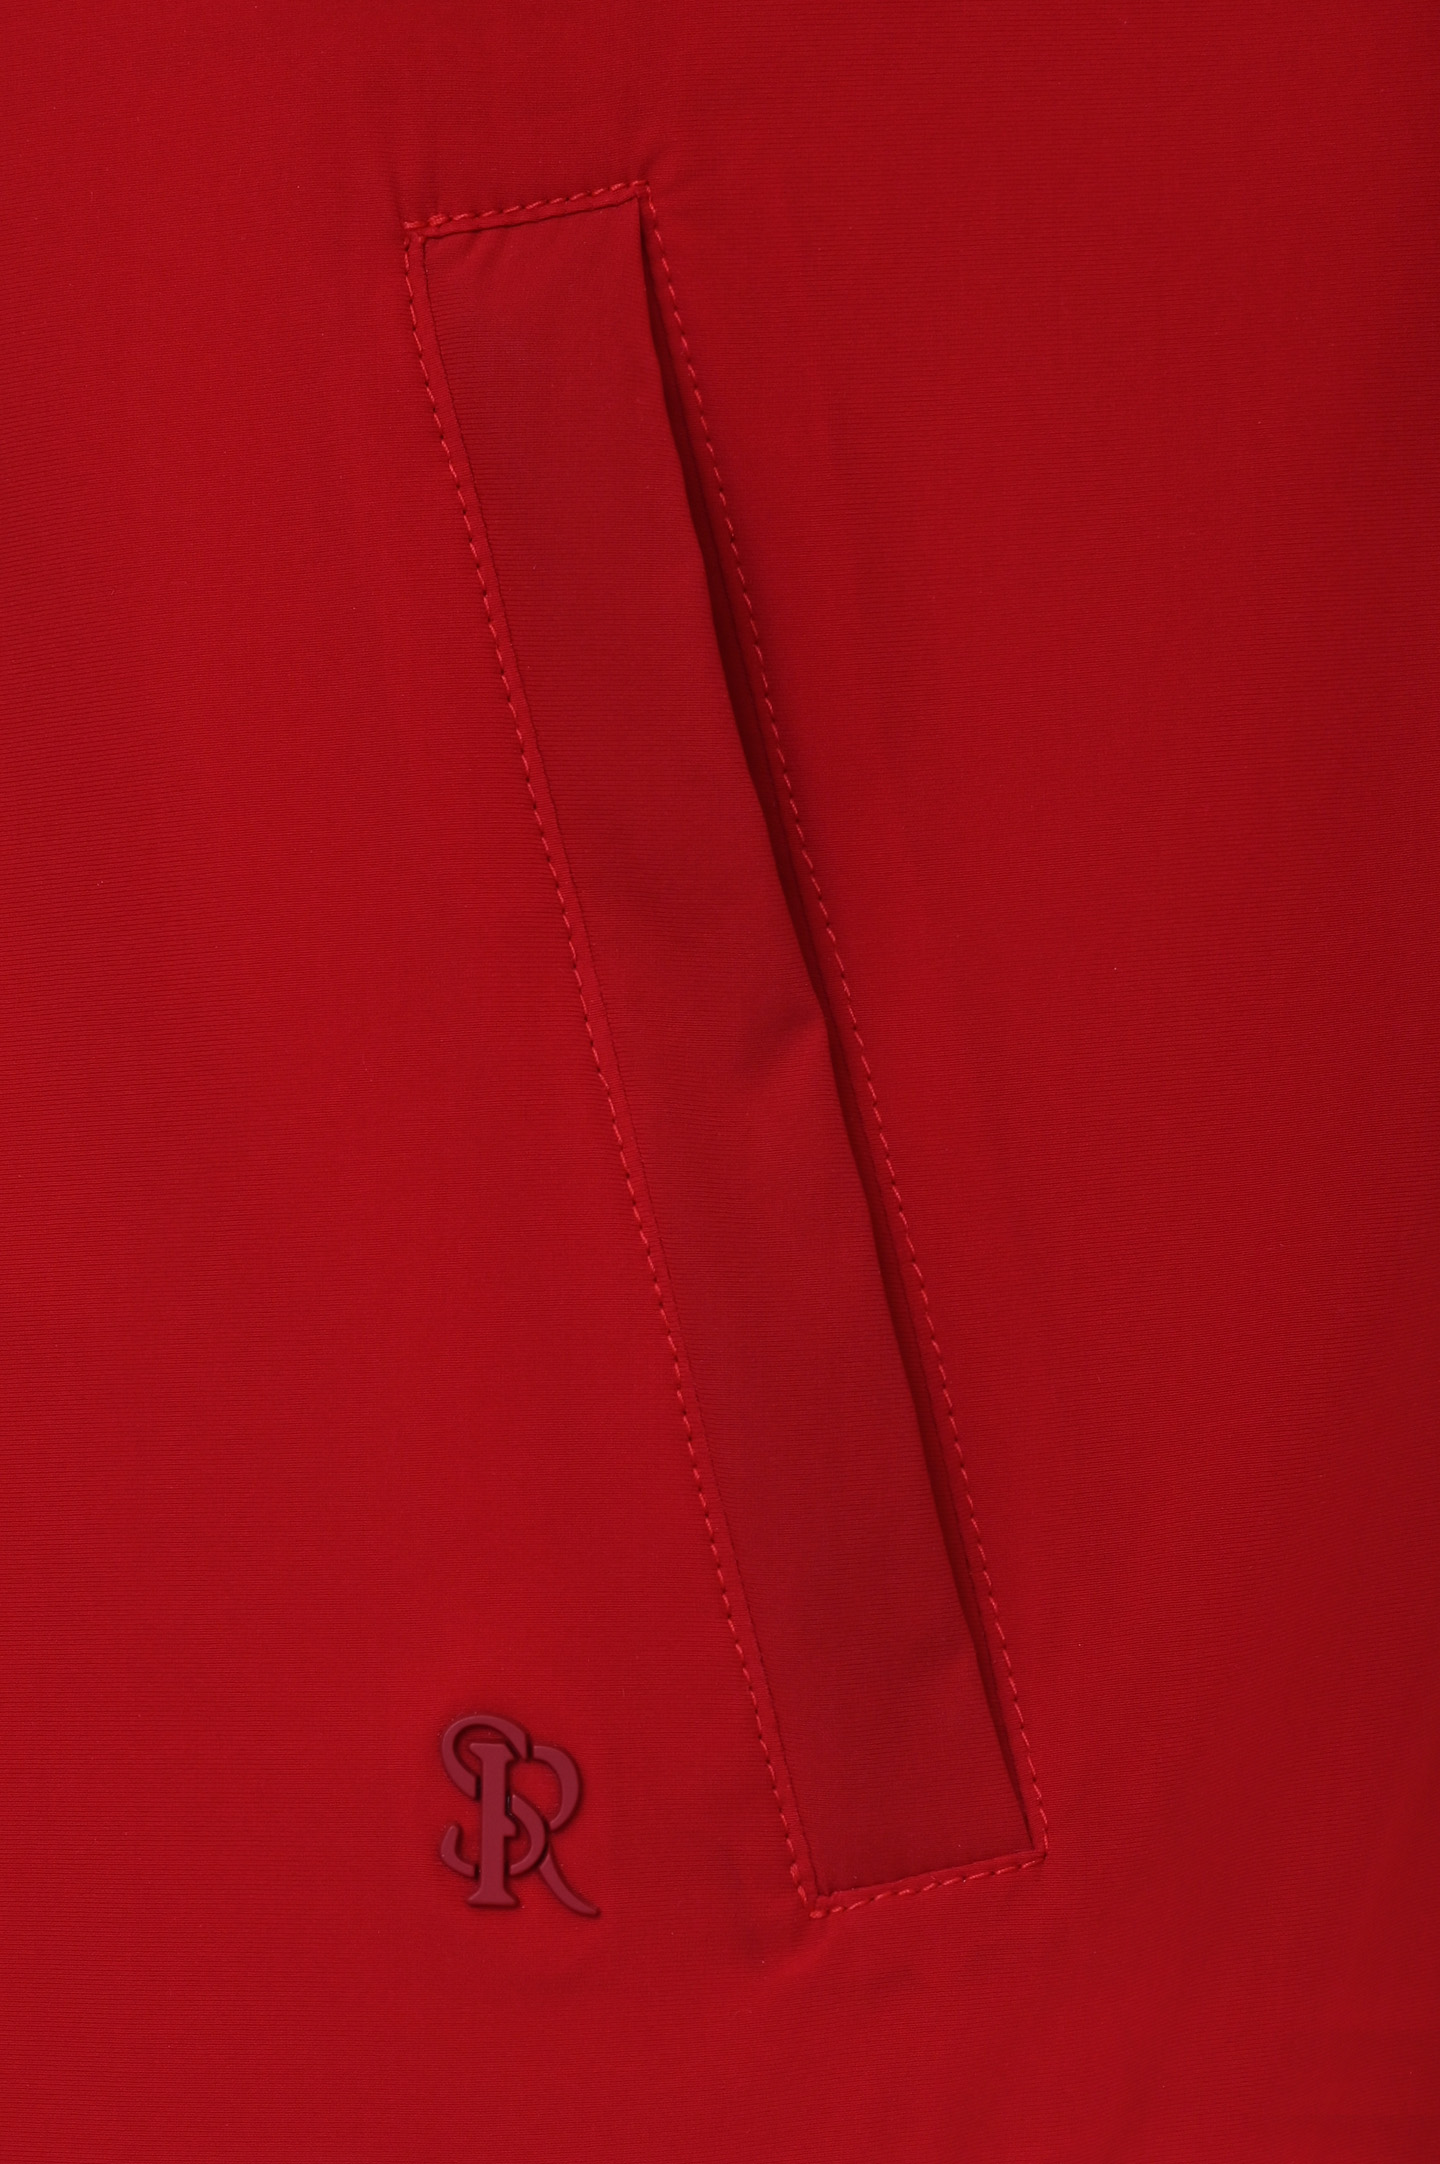 Куртка STEFANO RICCI MDJ0100340 4508, цвет: Красный, Мужской